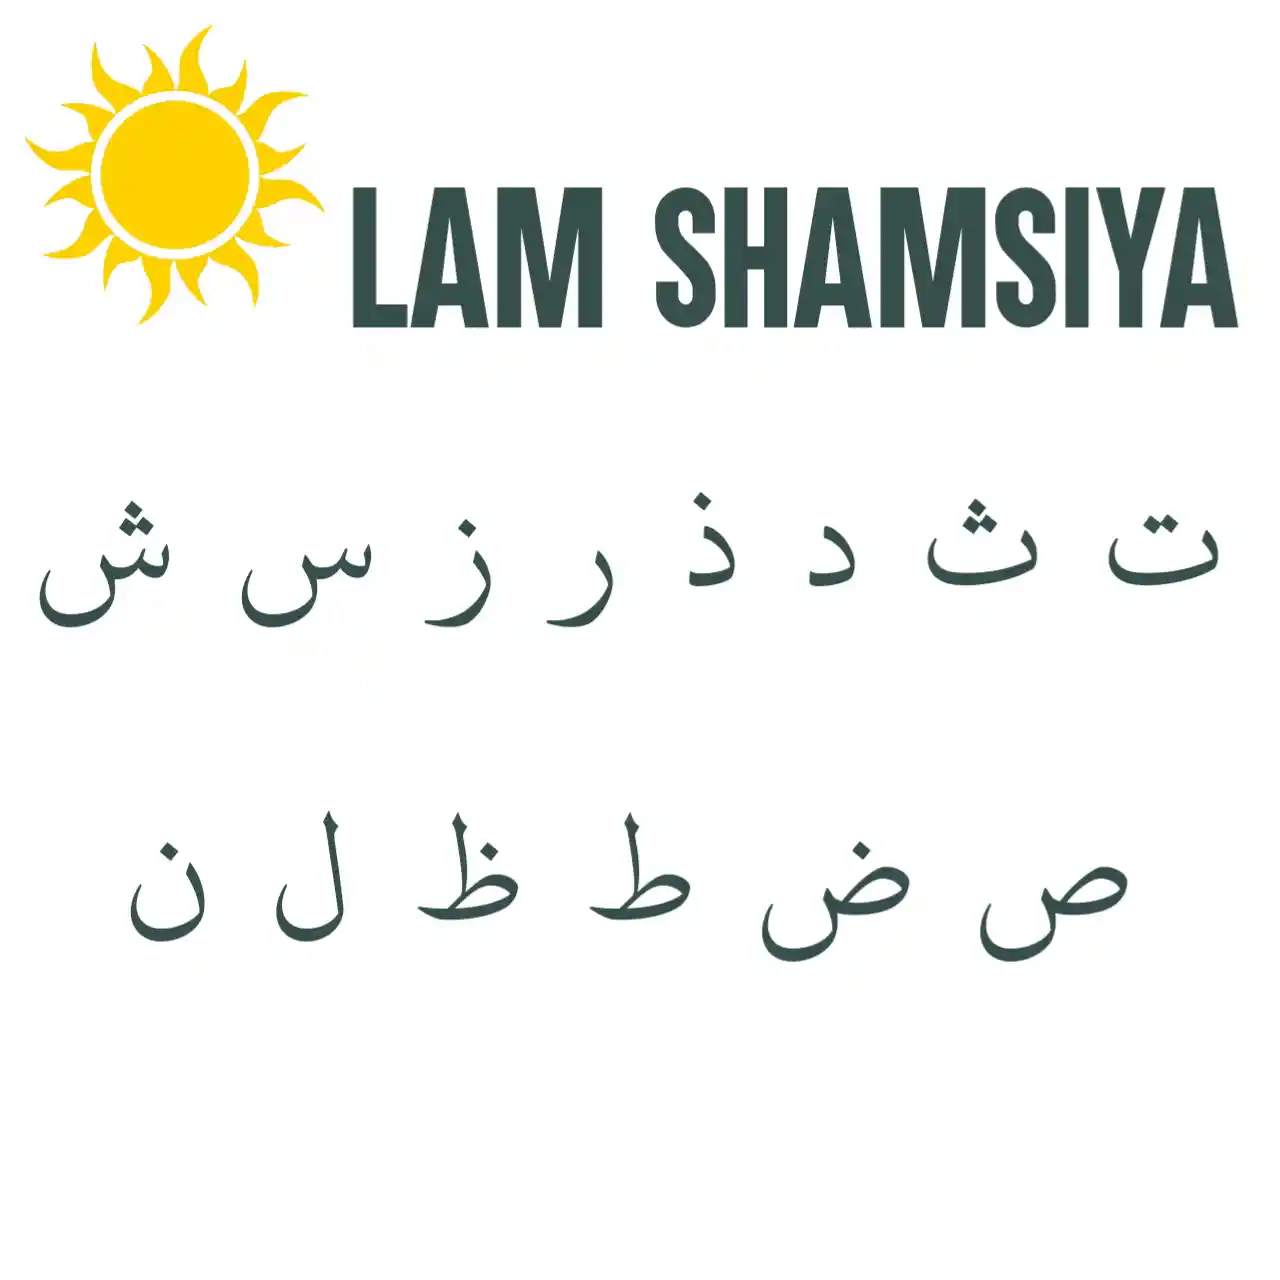 lam shamsiya